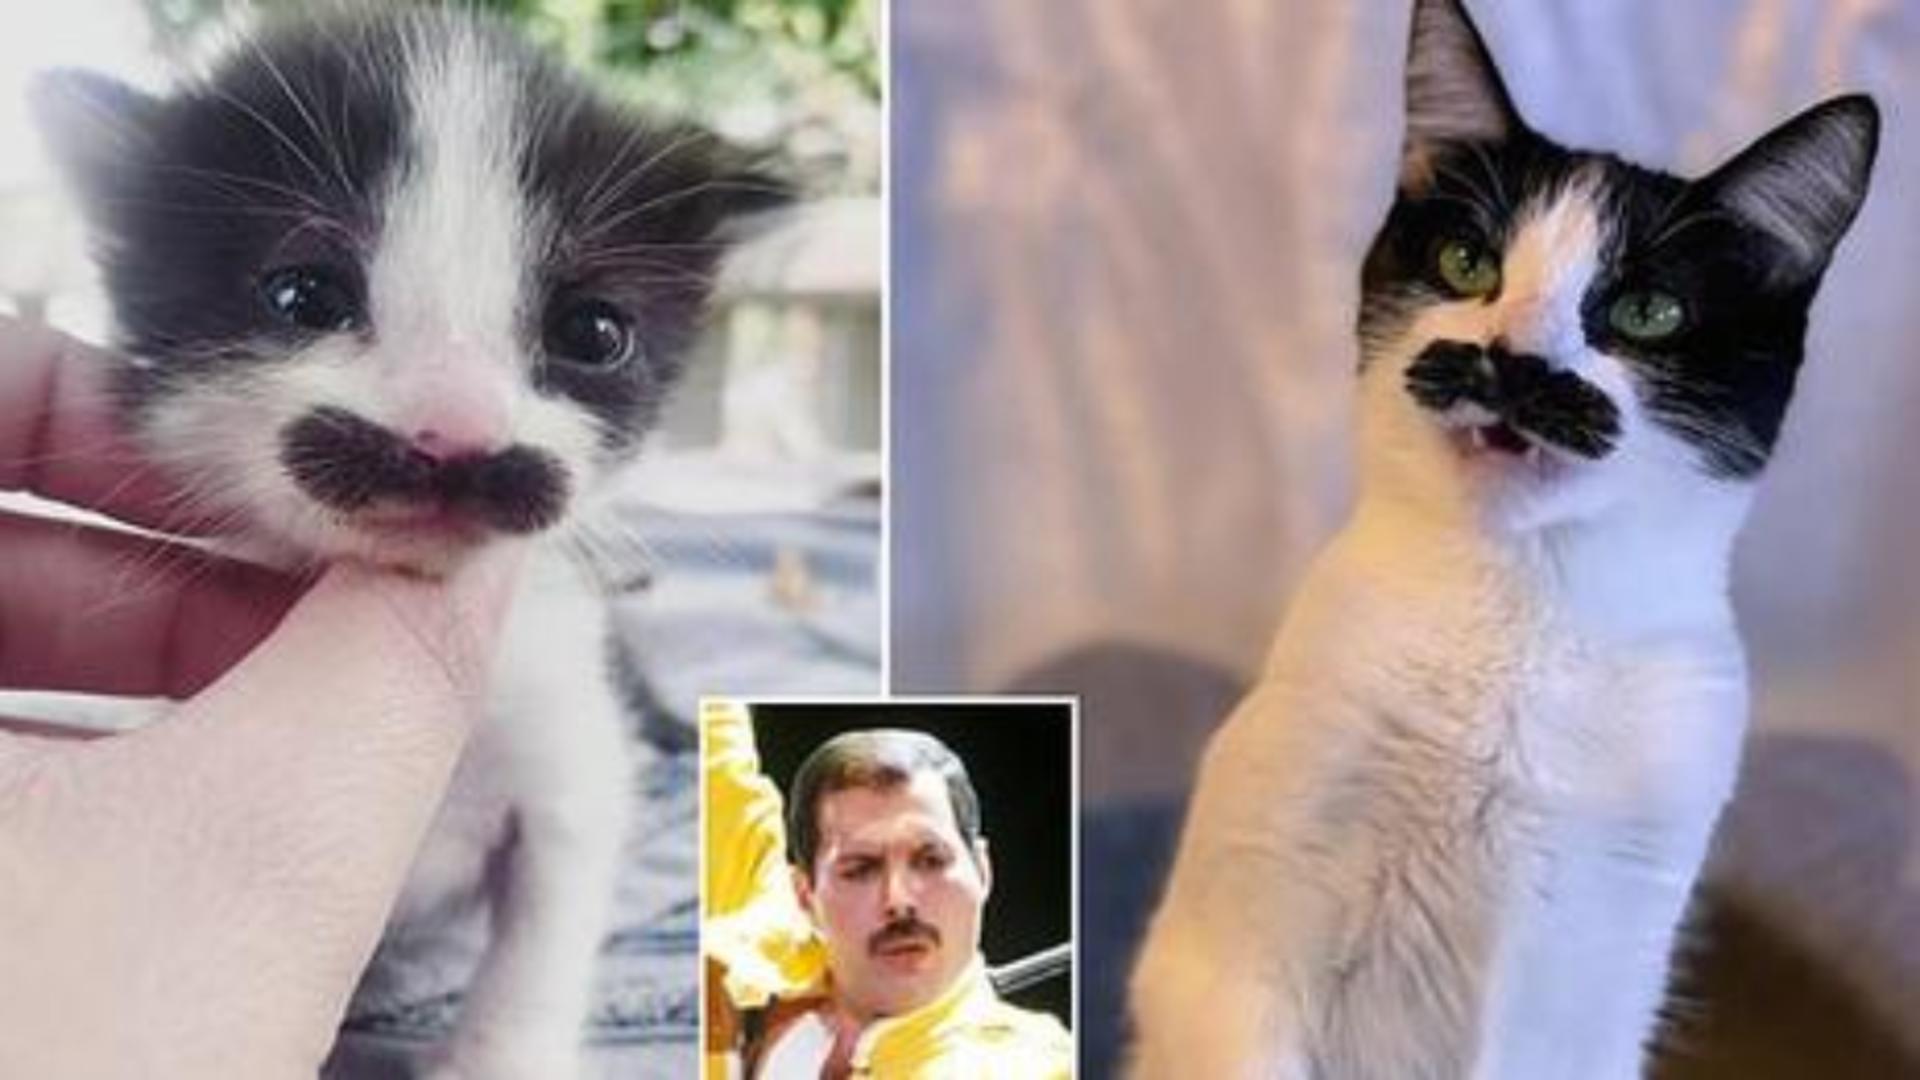 Mostaccioli, felina care seamănă cu Freddy Mercury, face furori pe internet Foto: DailyMail